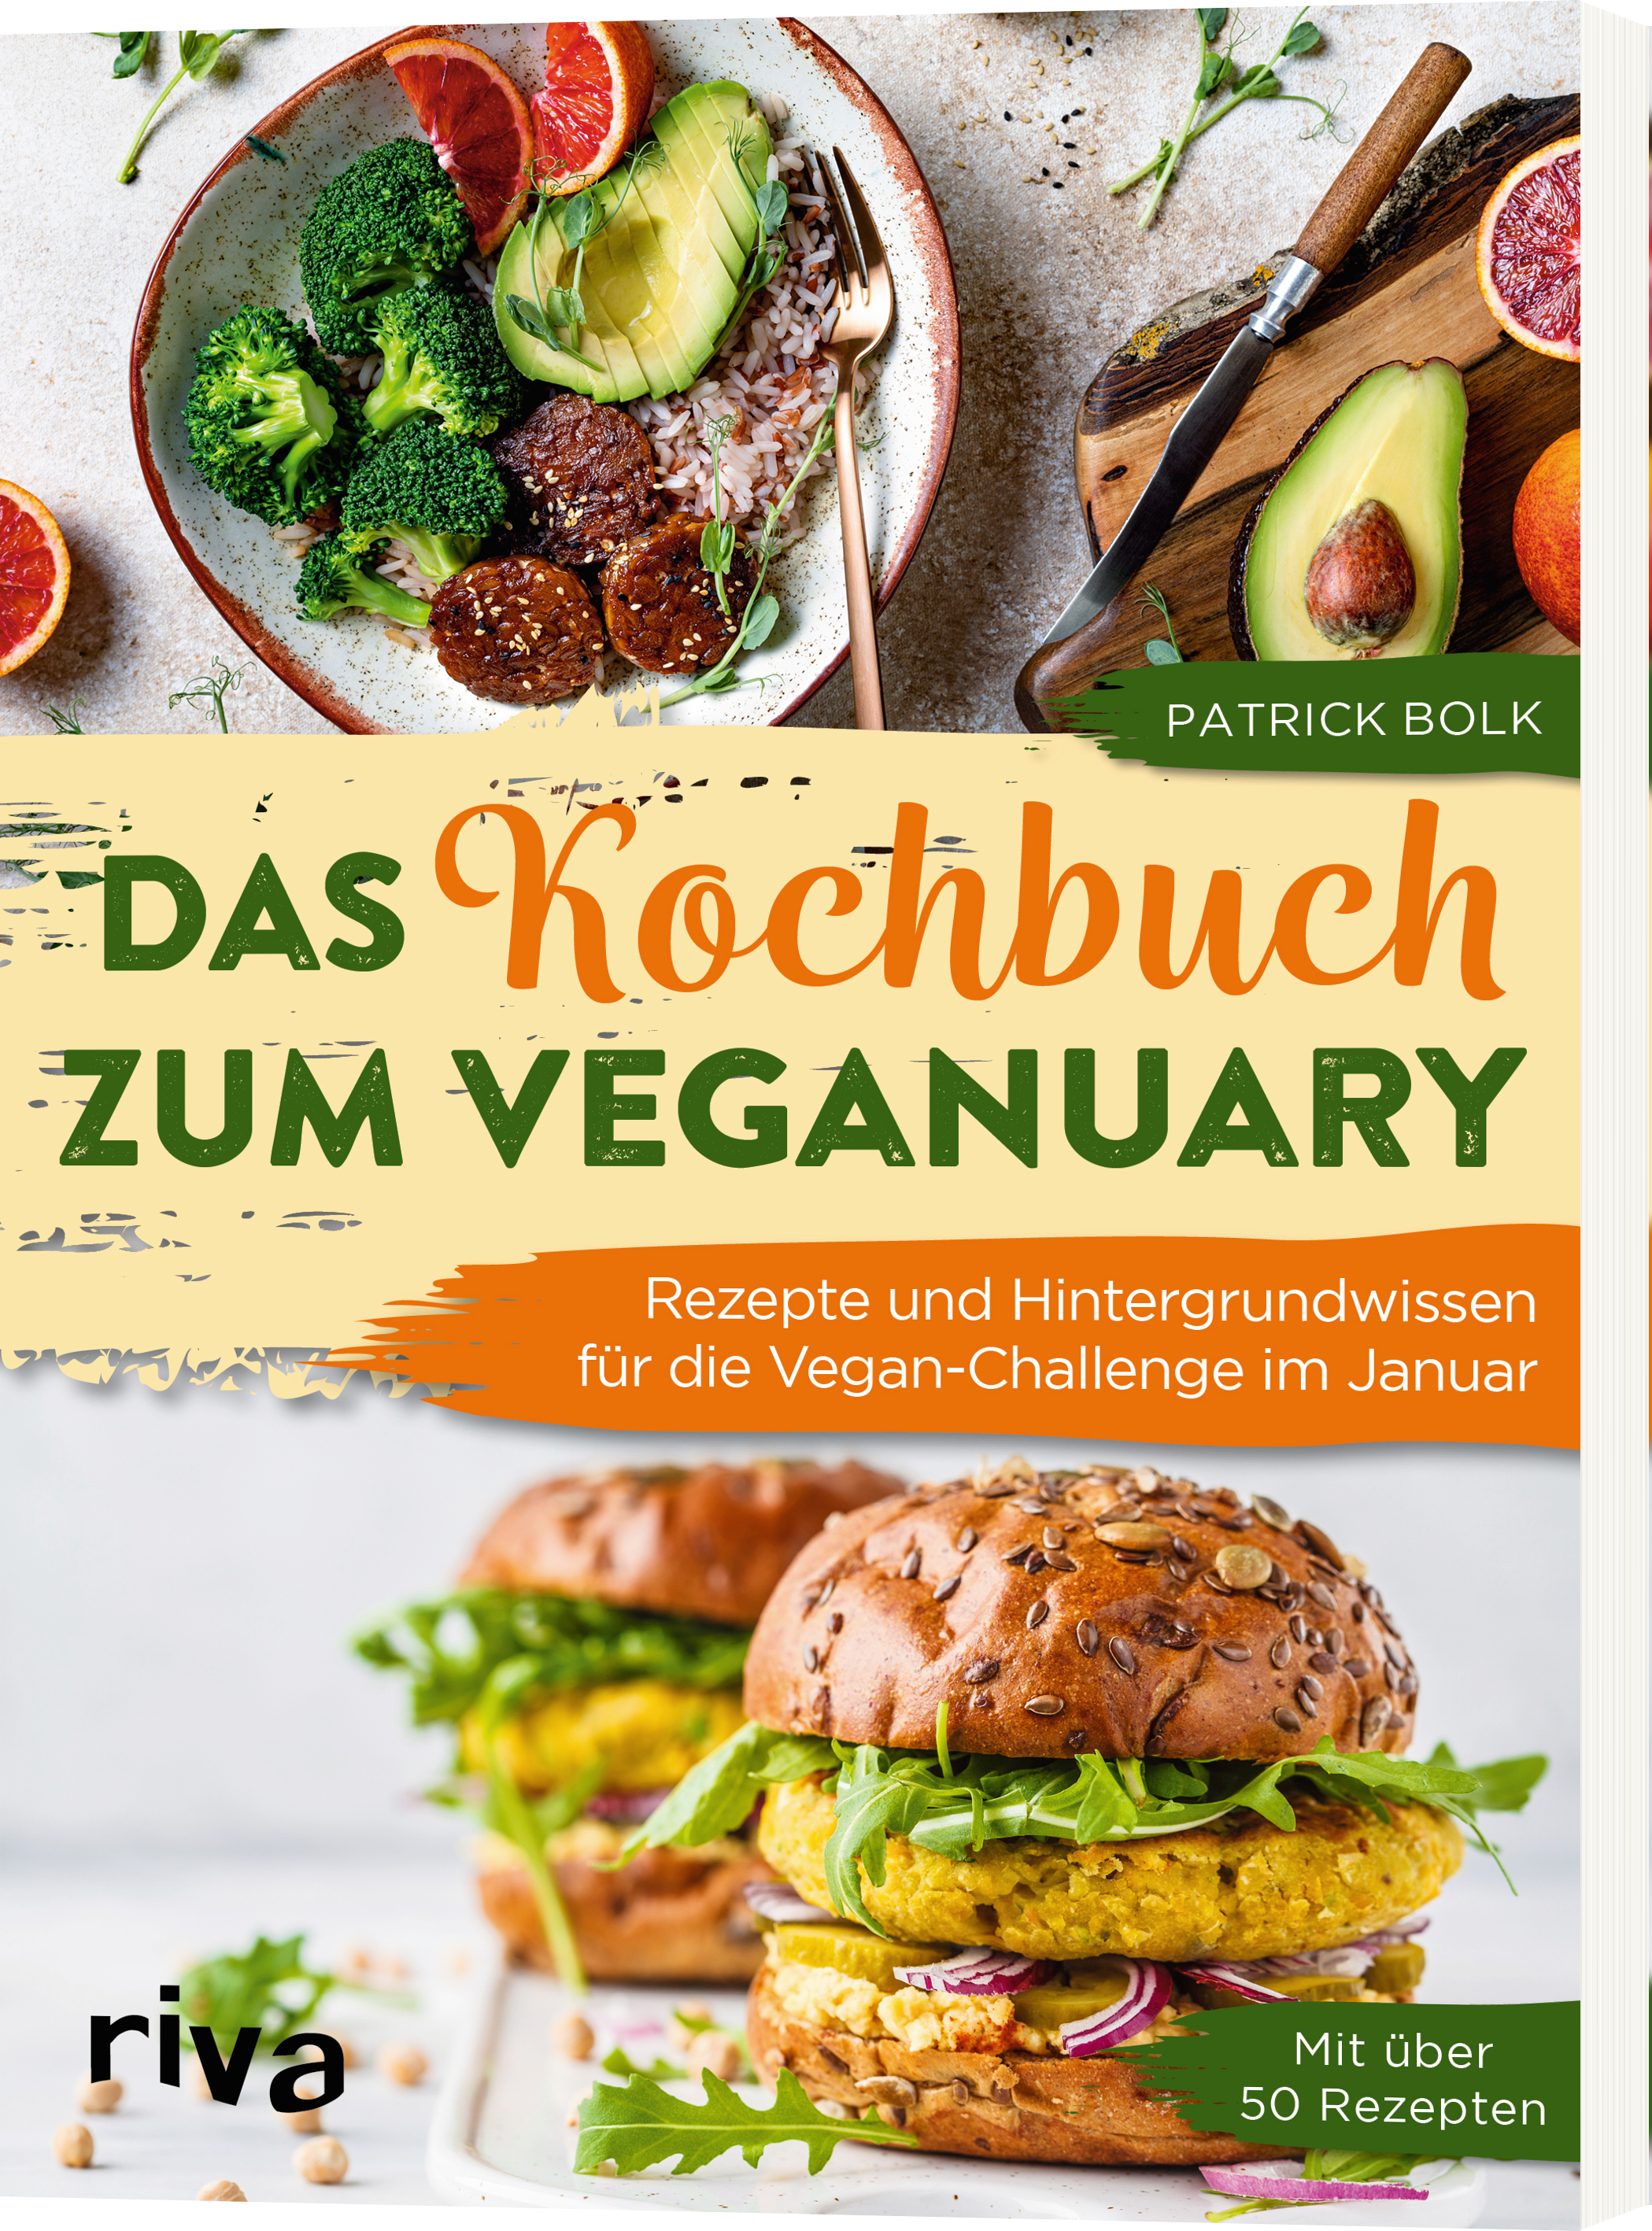 Buchvorstellung : Das Kochbuch zum Veganuary